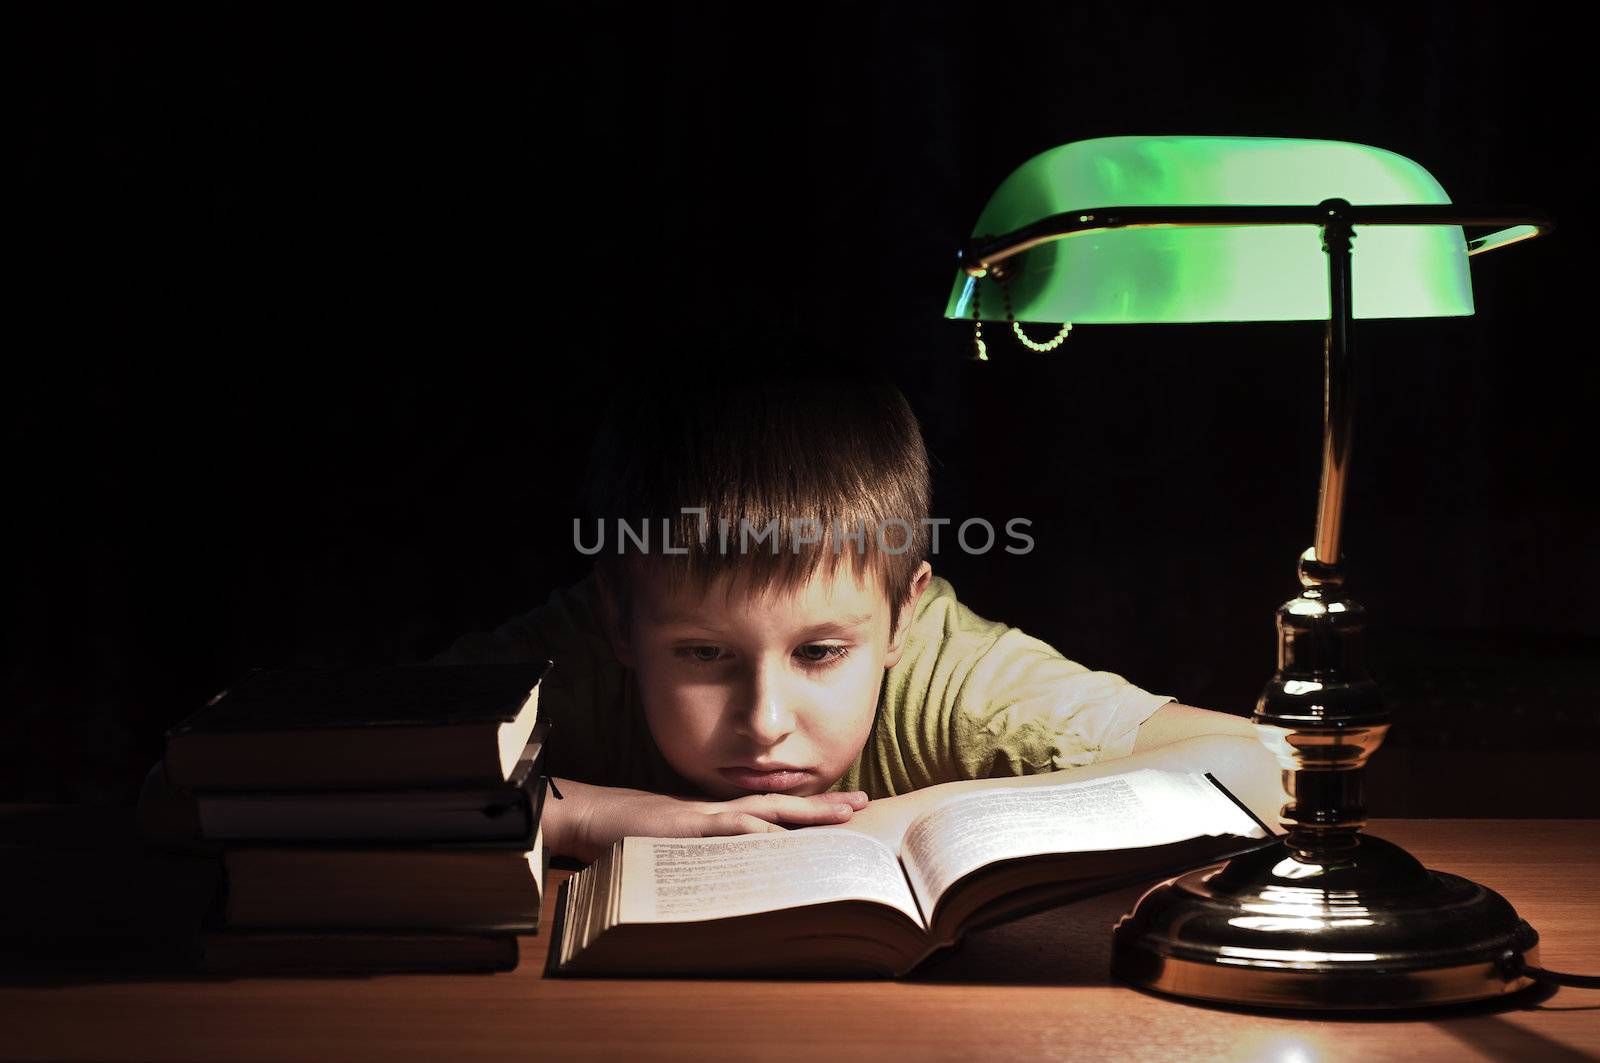 boy reads book in dark room under green lamp